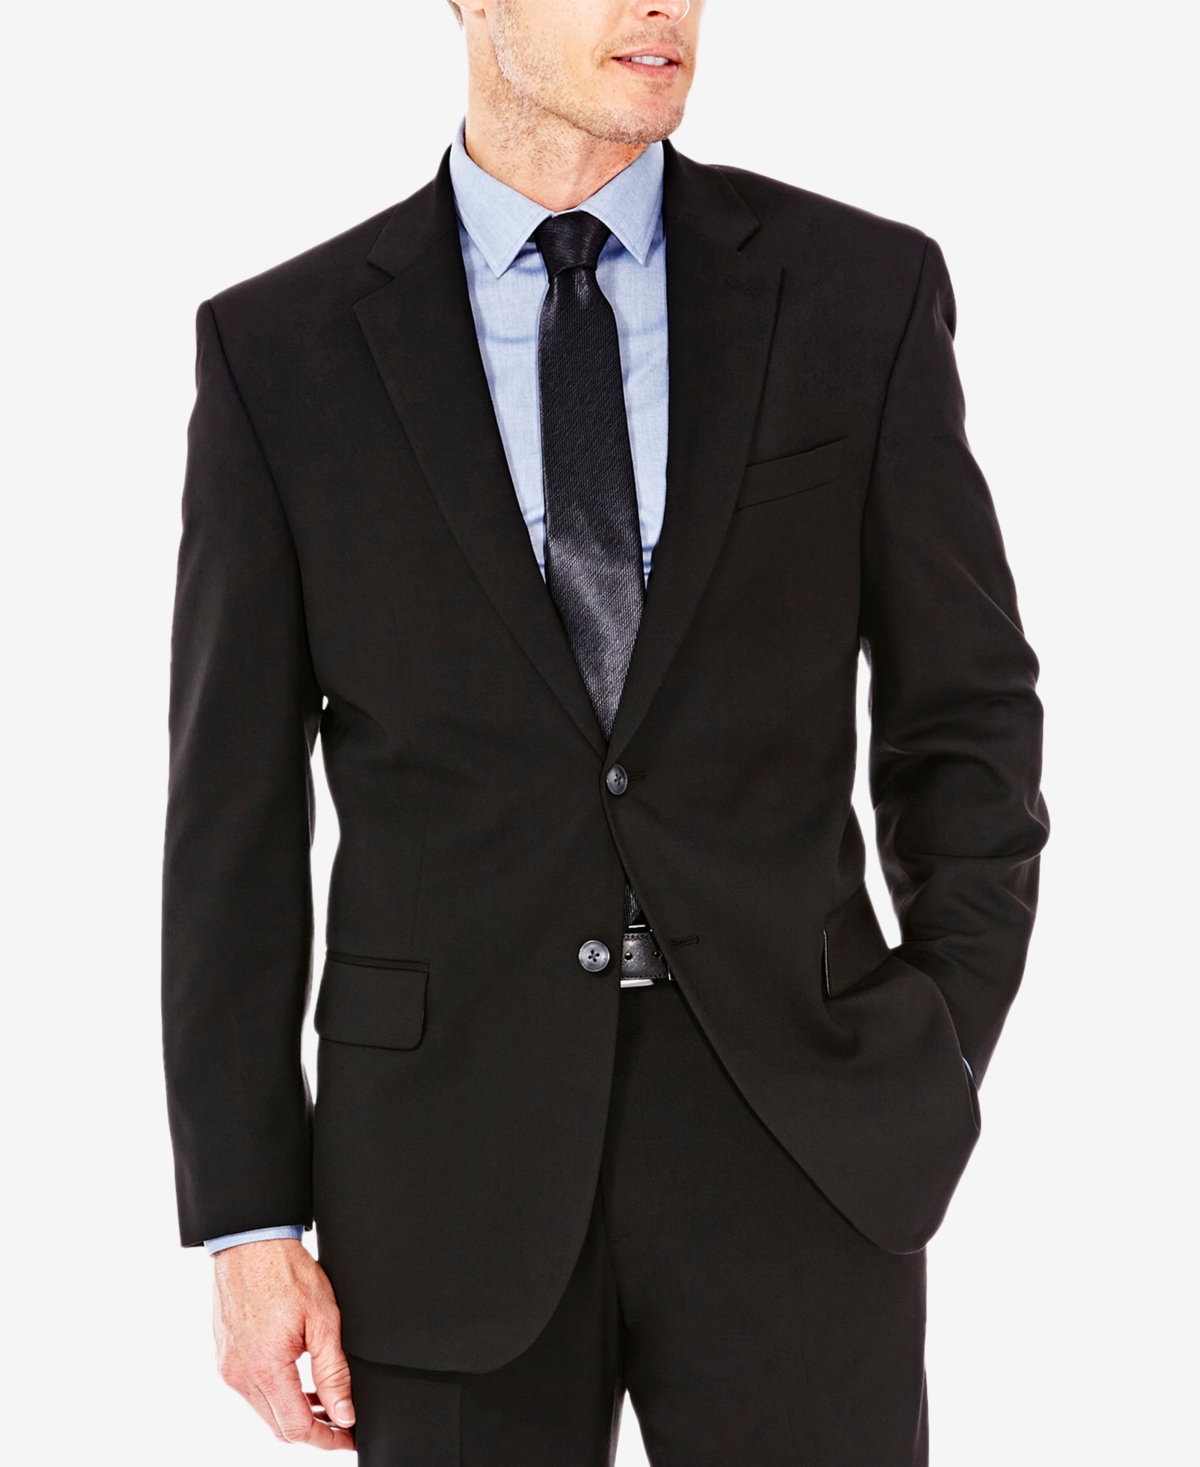 J.m. Haggar Men's Premium Stretch Classic Fit Suit Jacket - Dark Grey